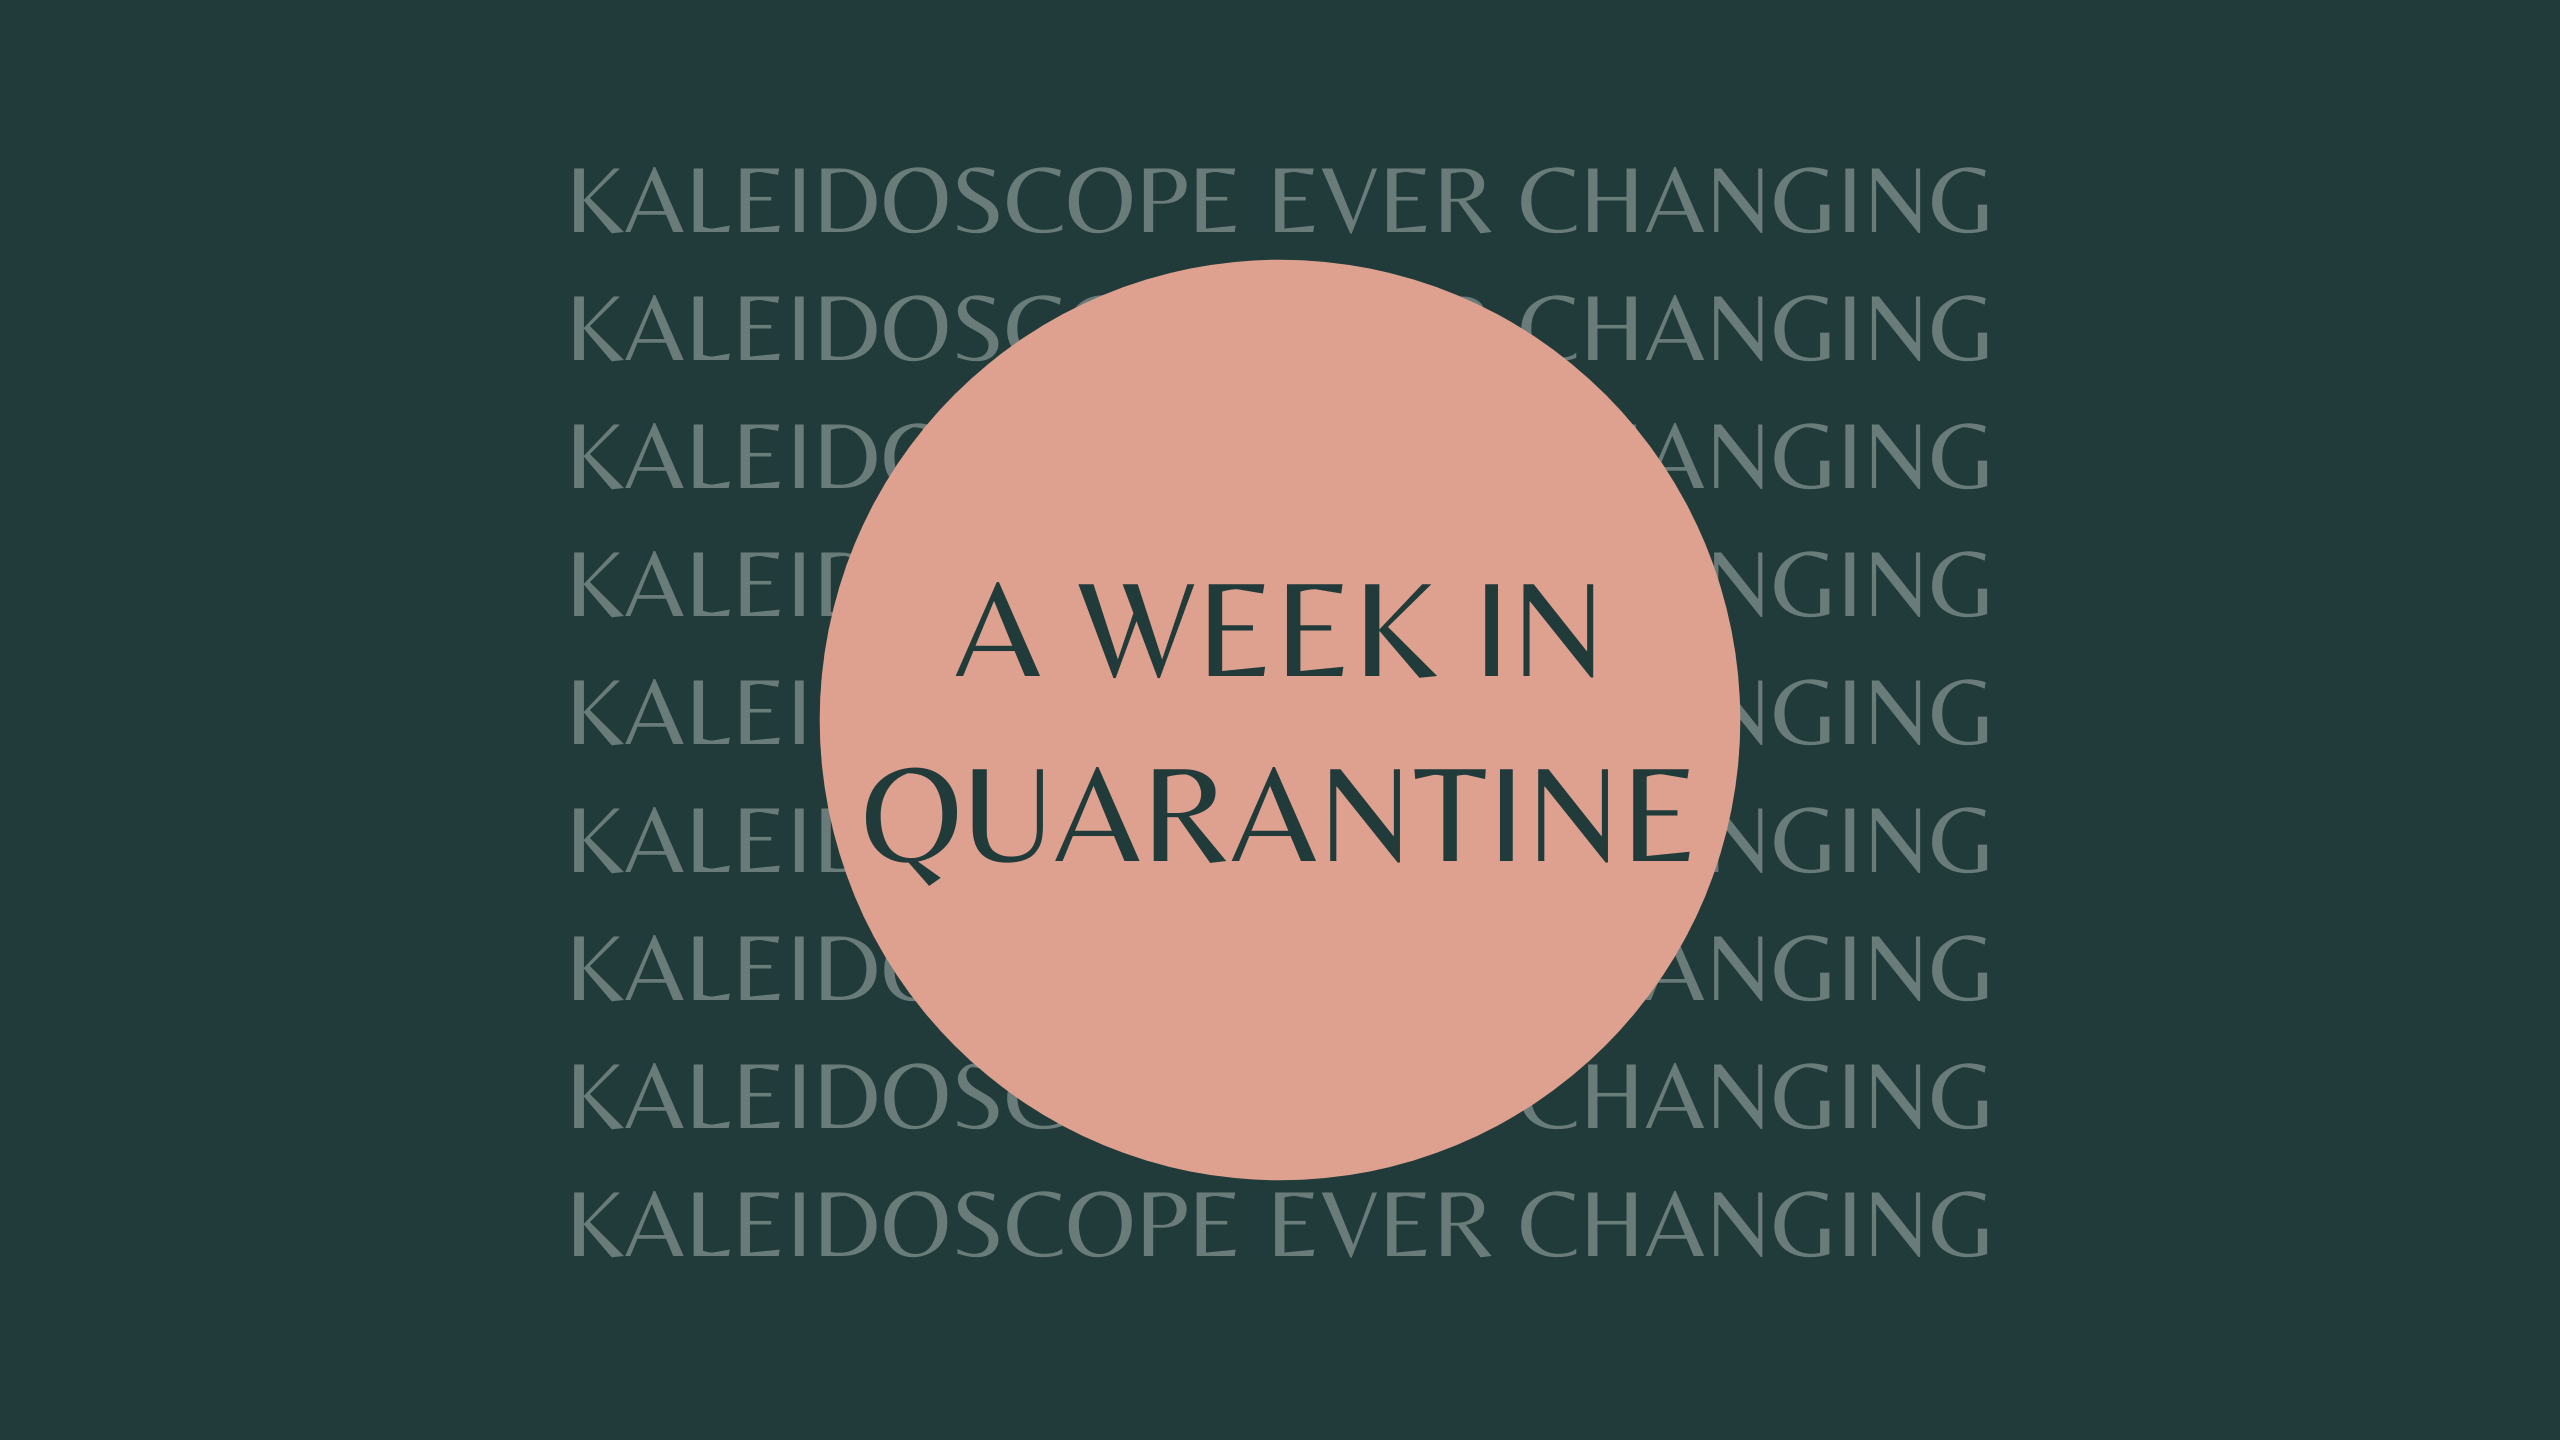 A week in Quarantine